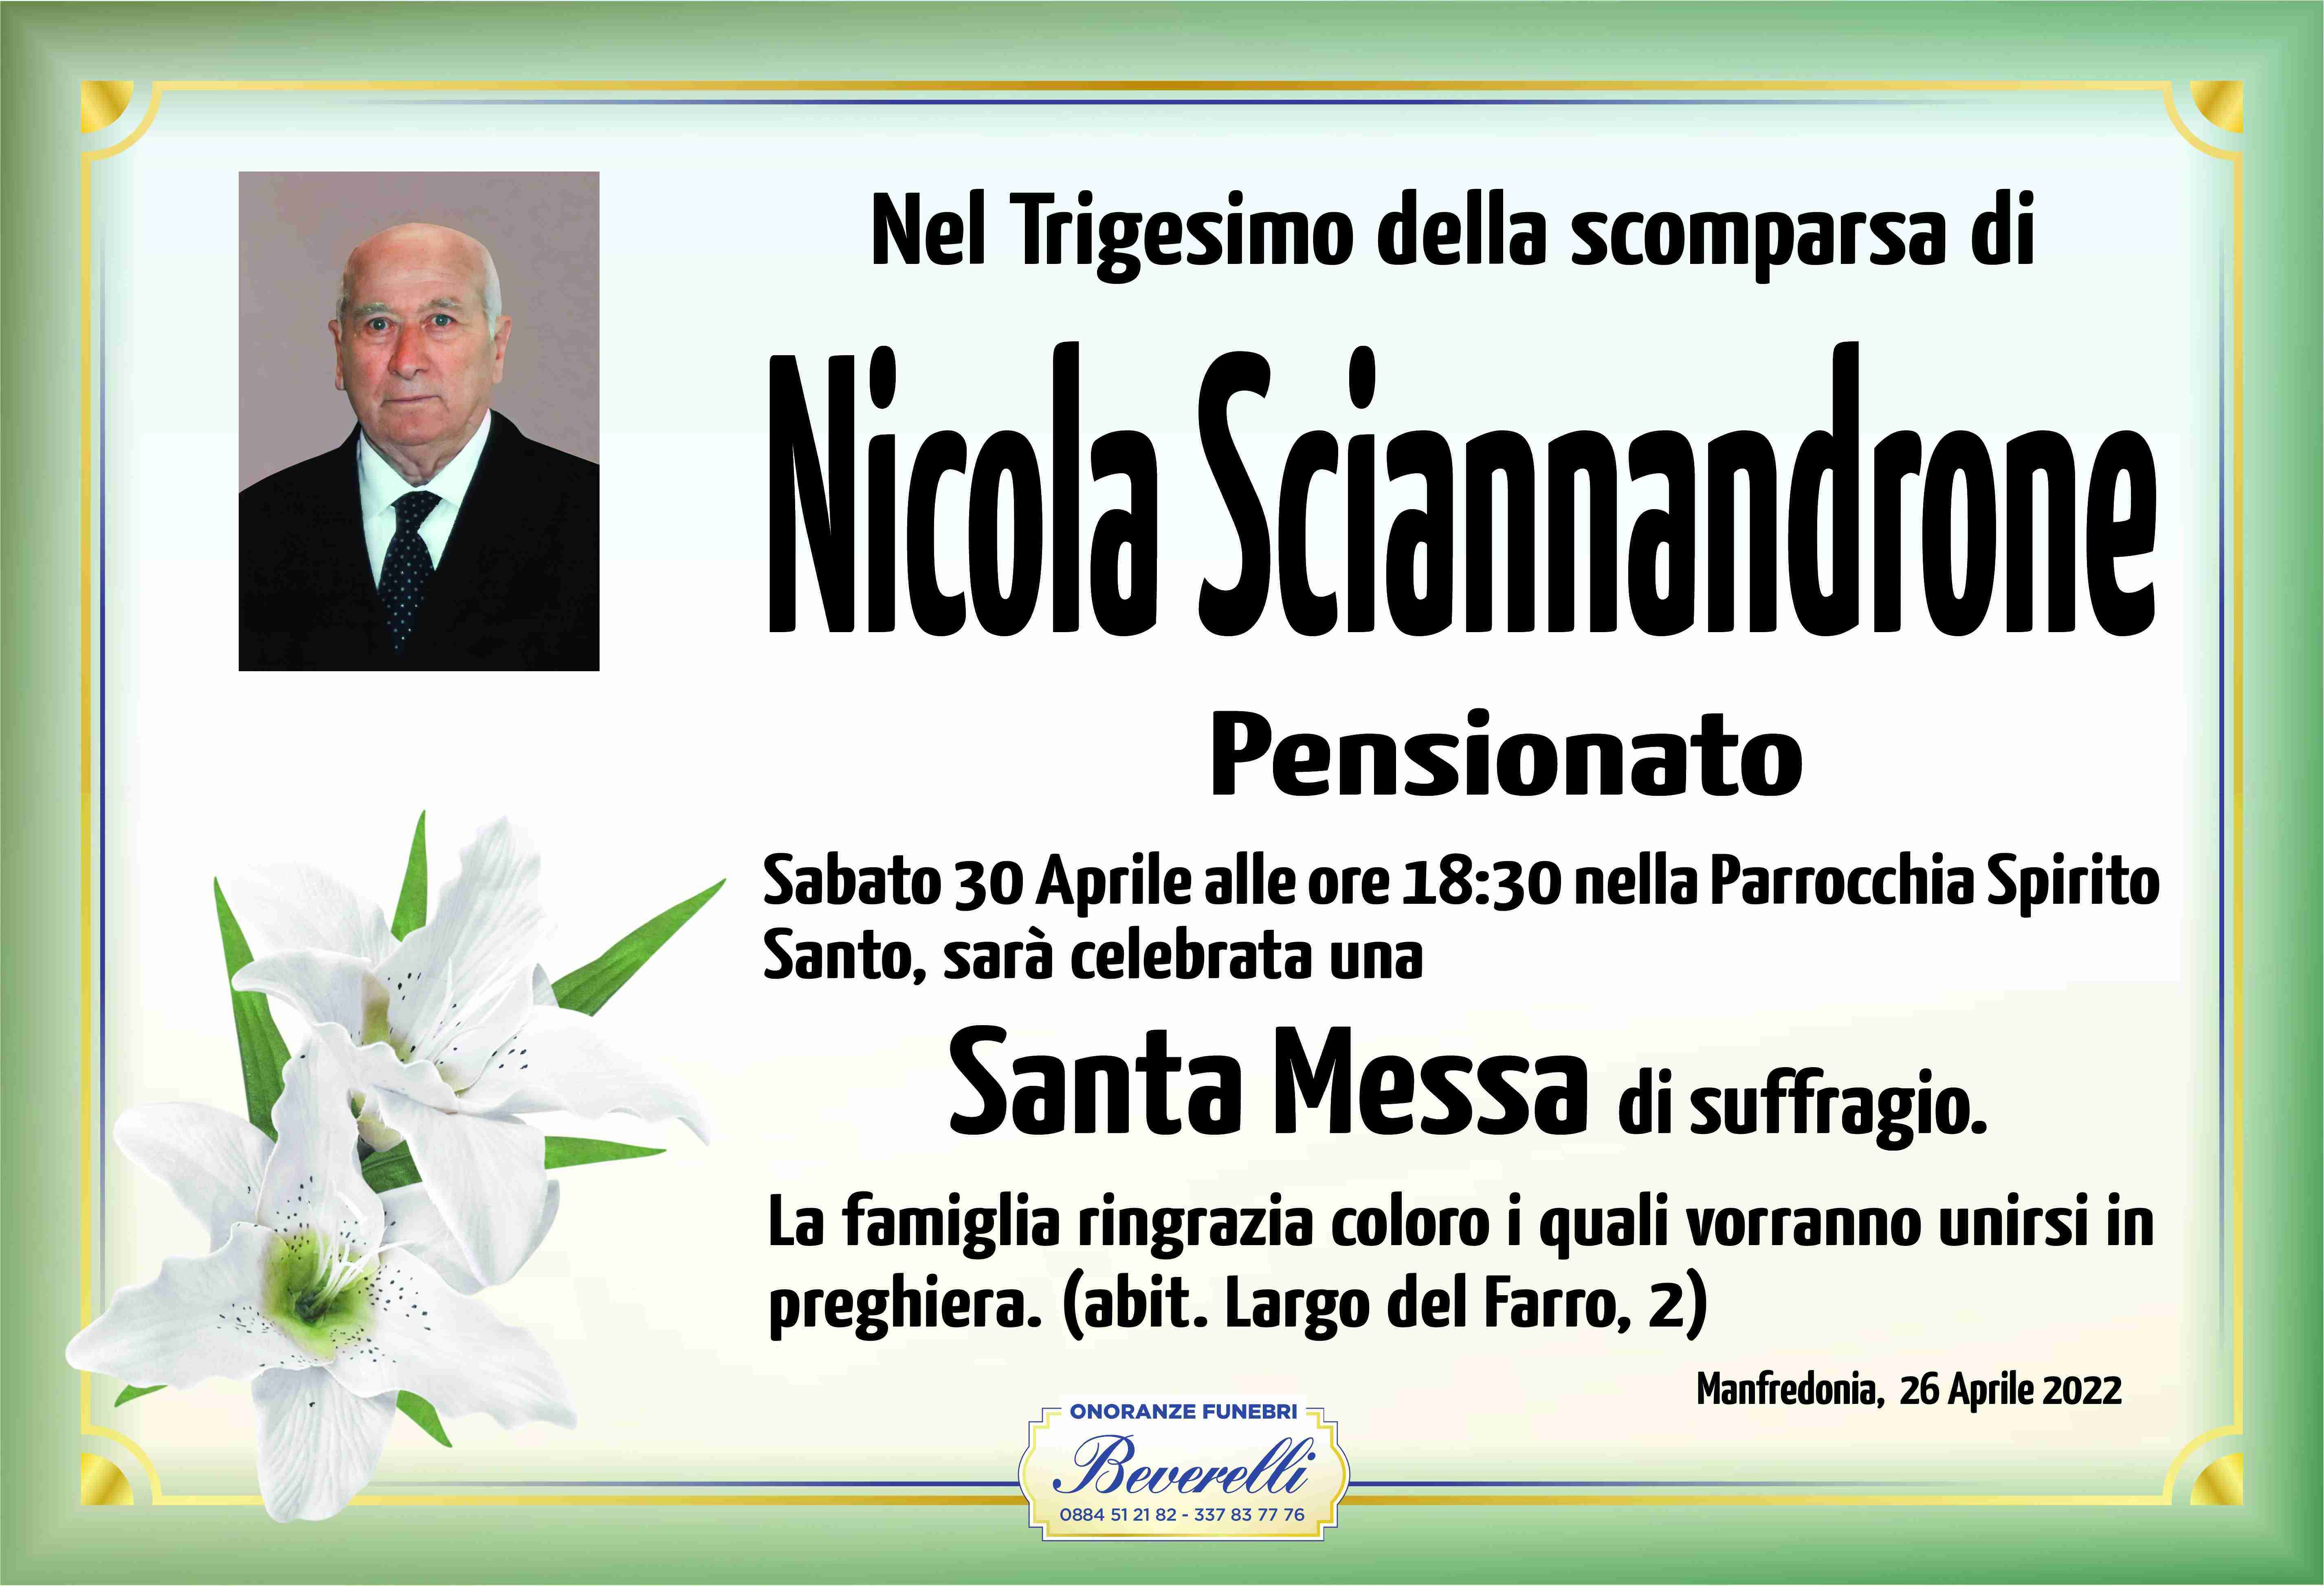 Nicola Sciannandrone